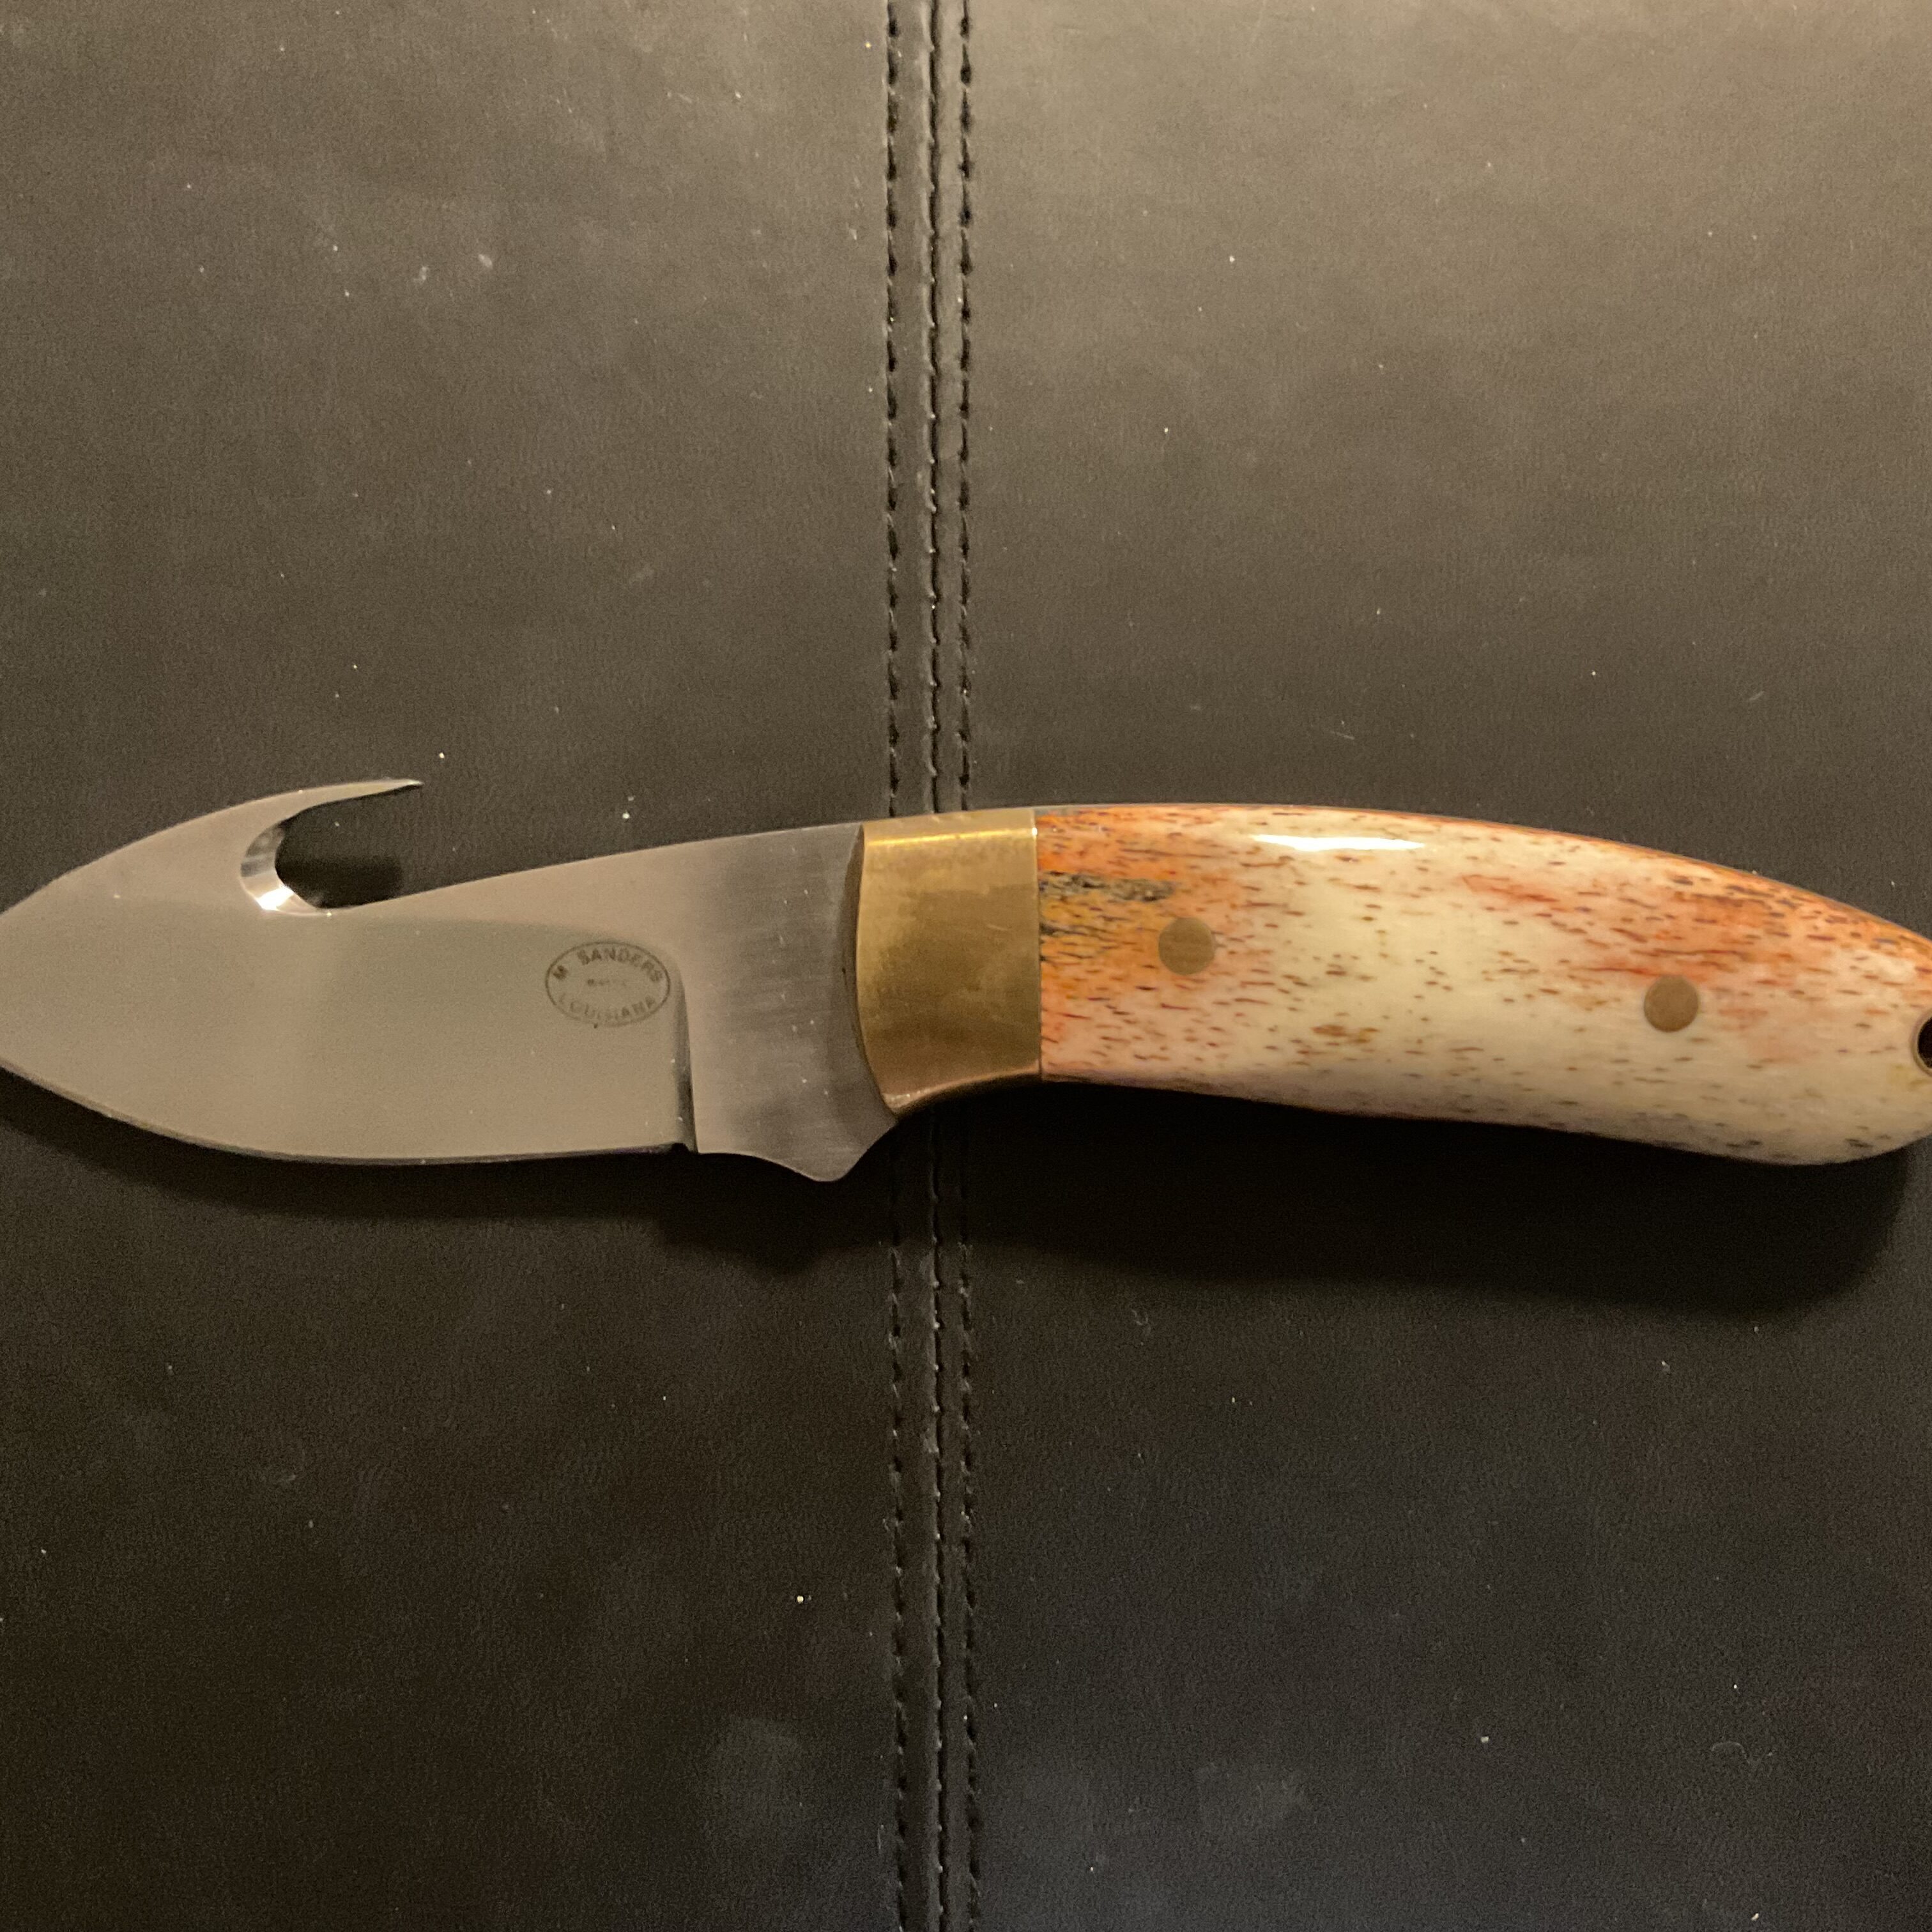 Mike Sanders knife